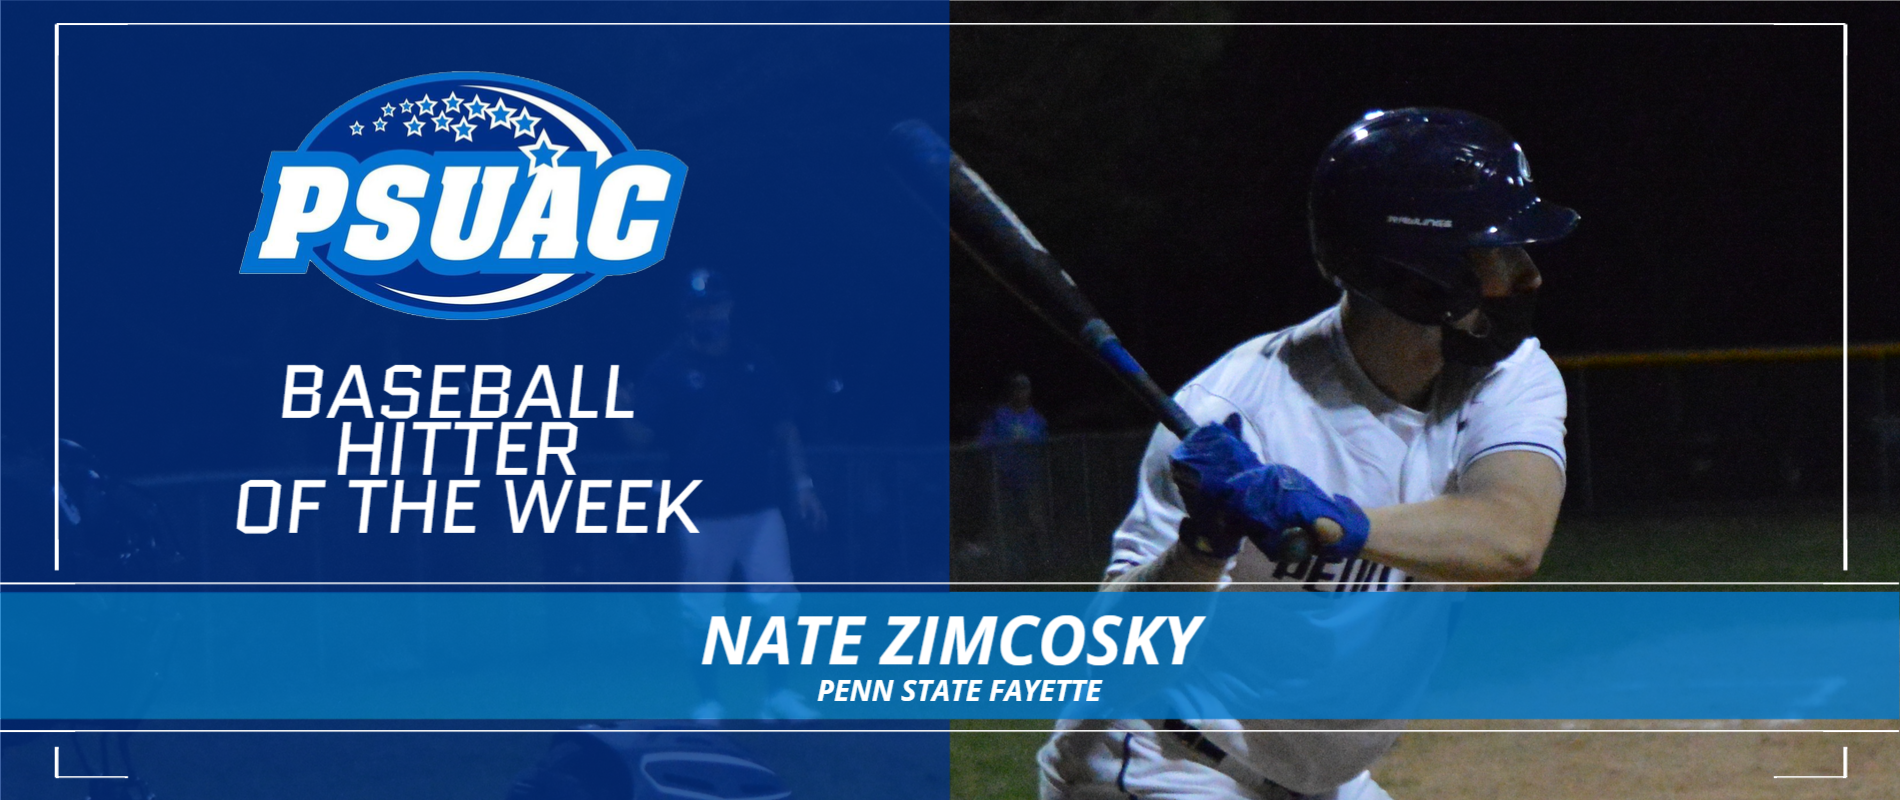 Penn State Fayette's Nate Zimcosky.